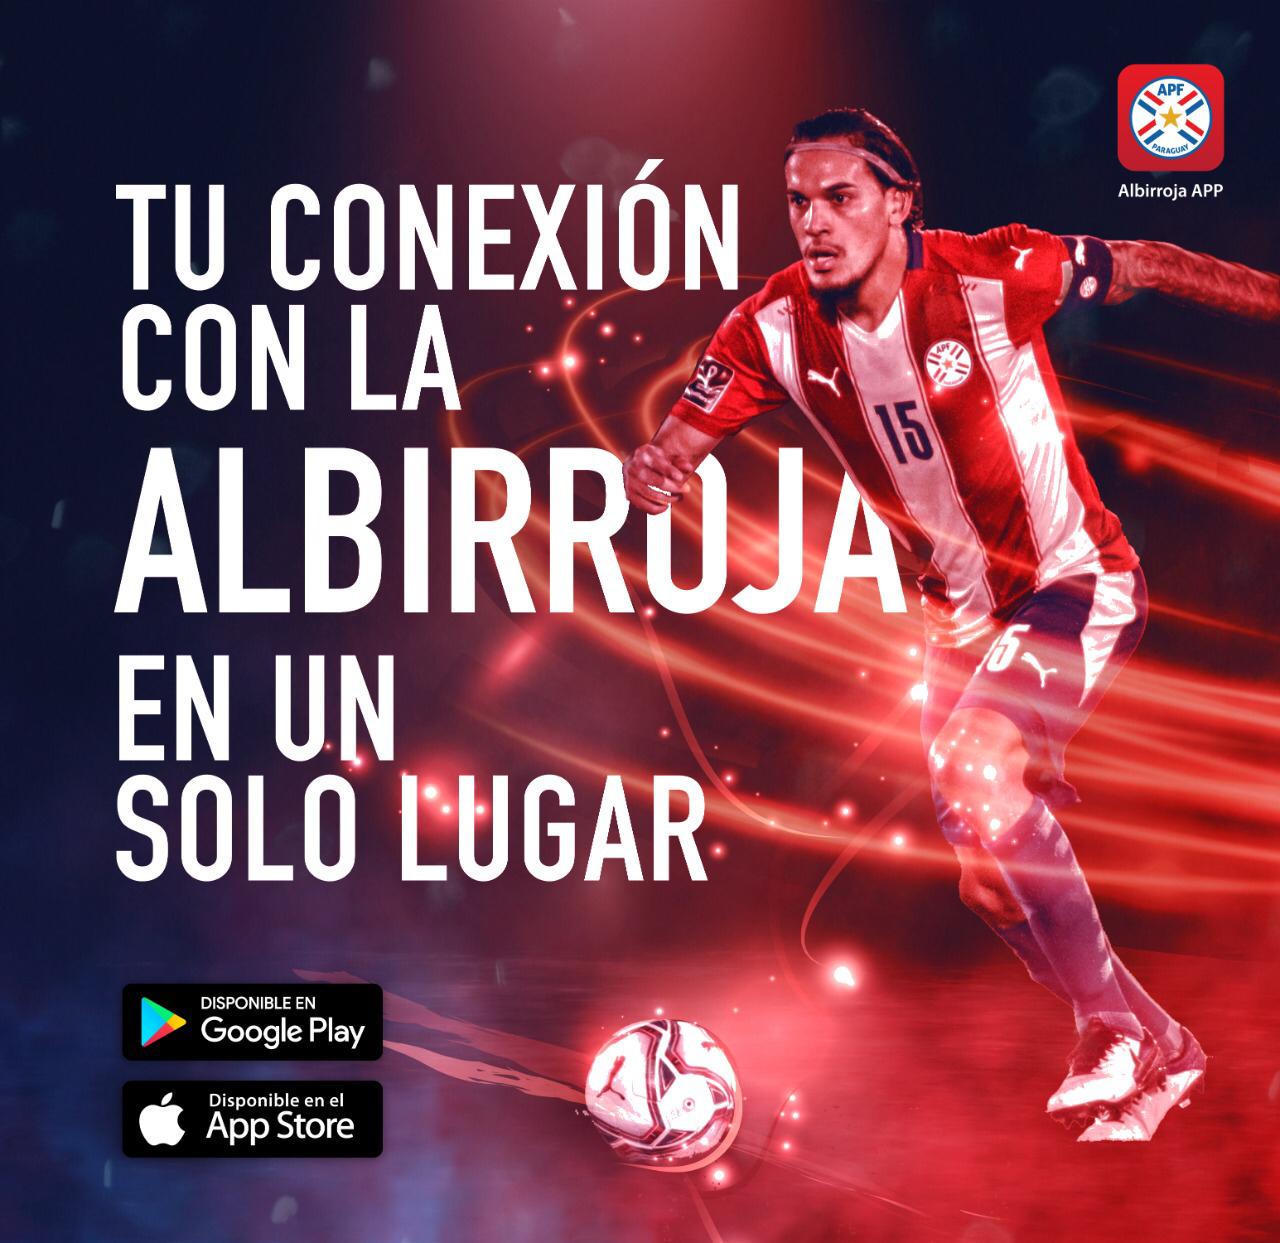 La nueva app de la Albirroja ofrecerá a los hinchas la oportunidad de acompañar a la Selección camino a Catar 2022. Fuente: APF.